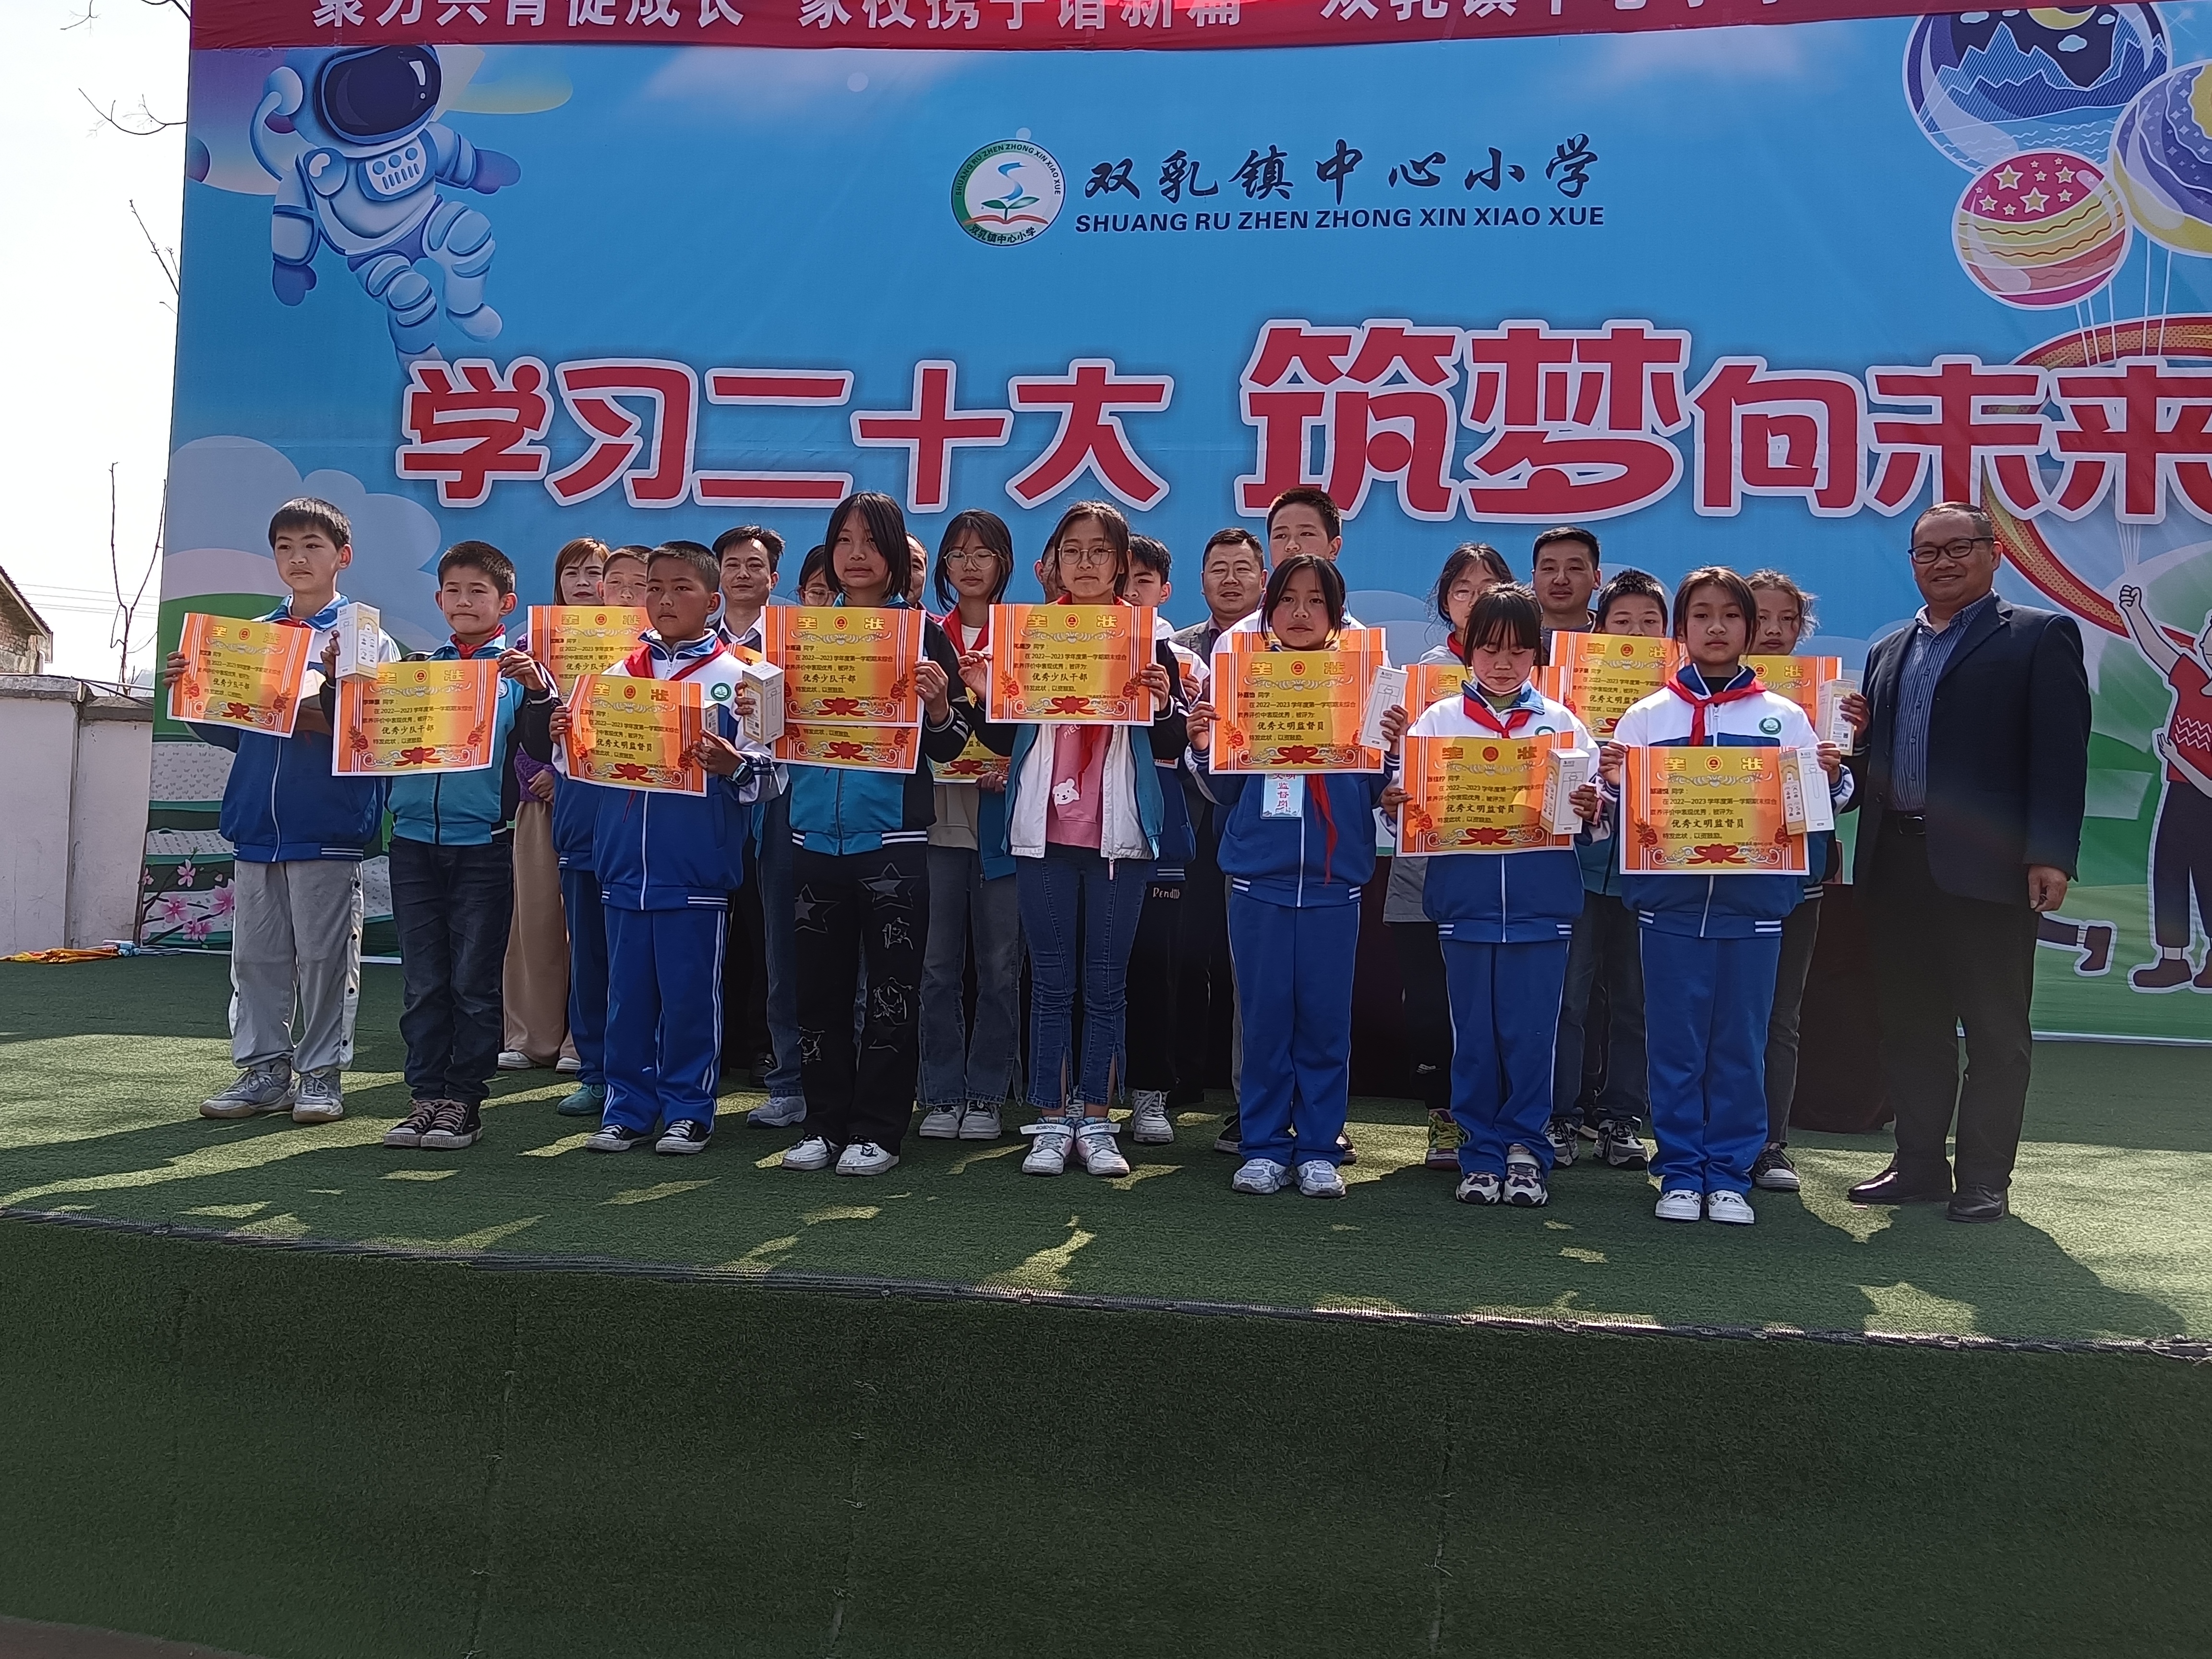 创先争优 激励前行——汉阴县双乳镇中心小学举行优秀学生表彰大会